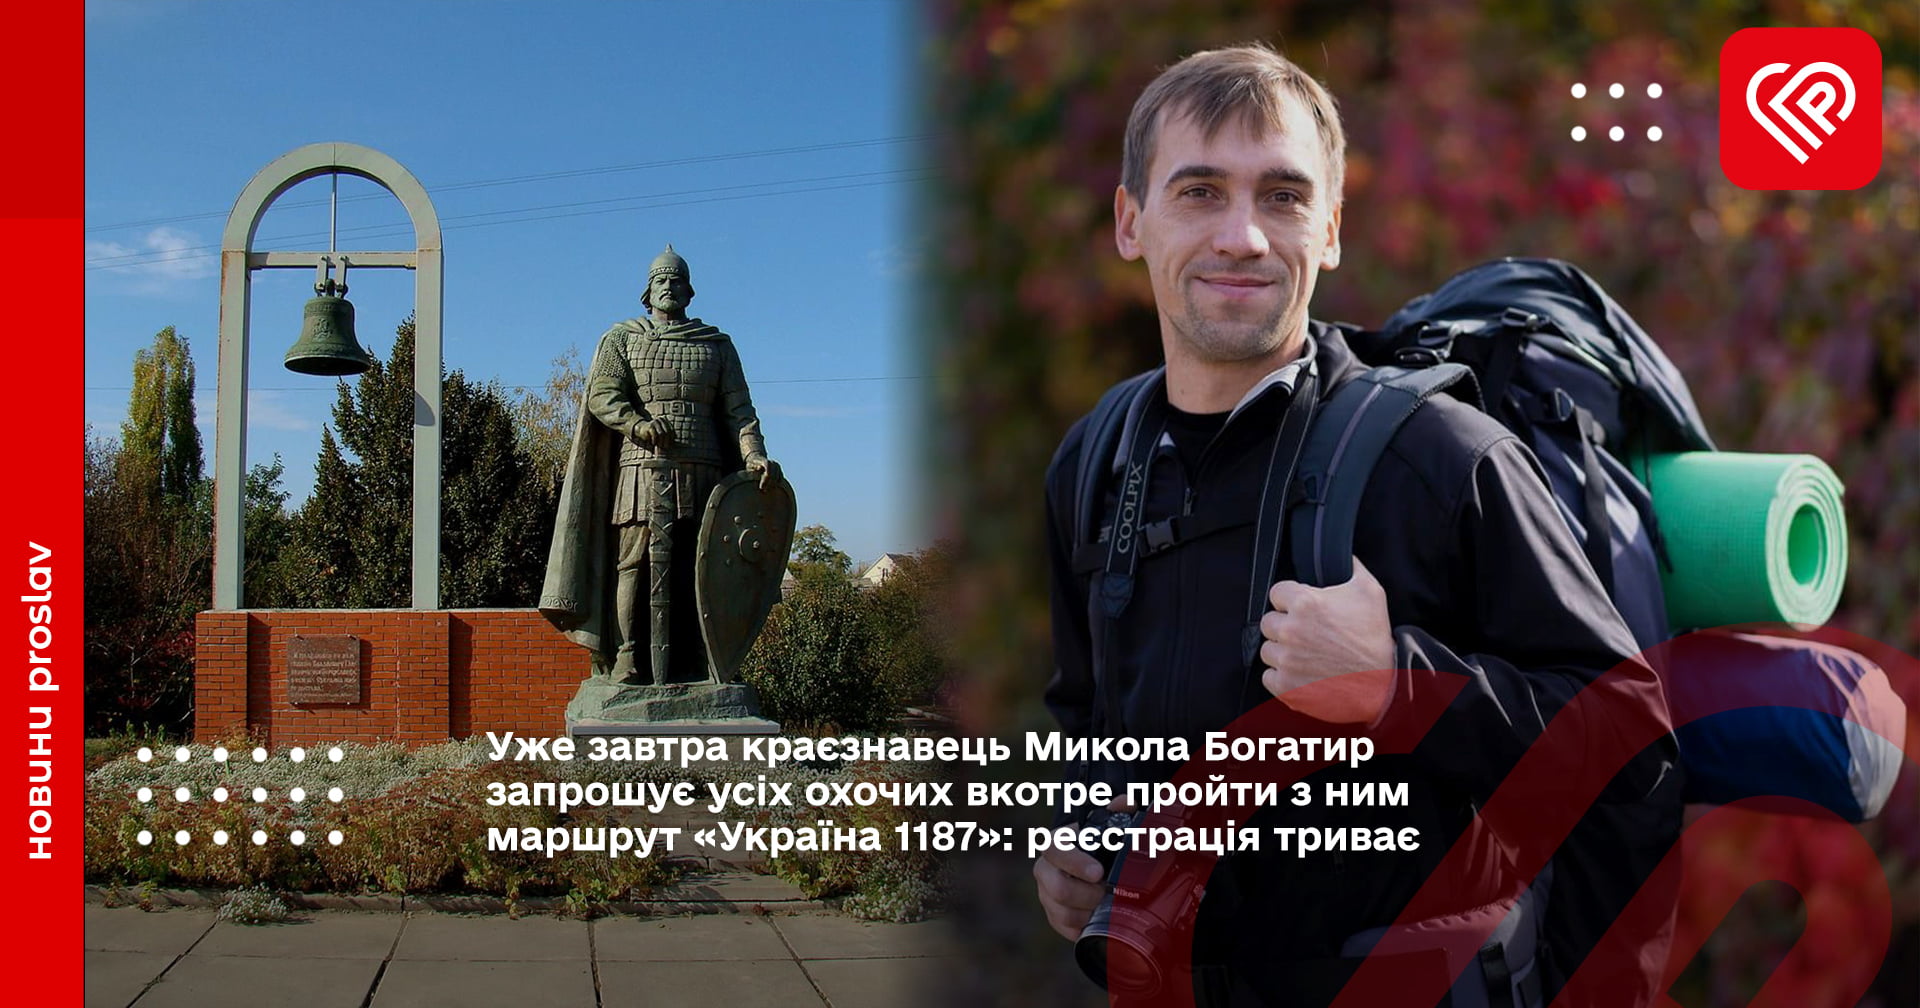 Микола Богатир запрошує усіх охочих вкотре пройти з ним маршрут «Україна 1187»